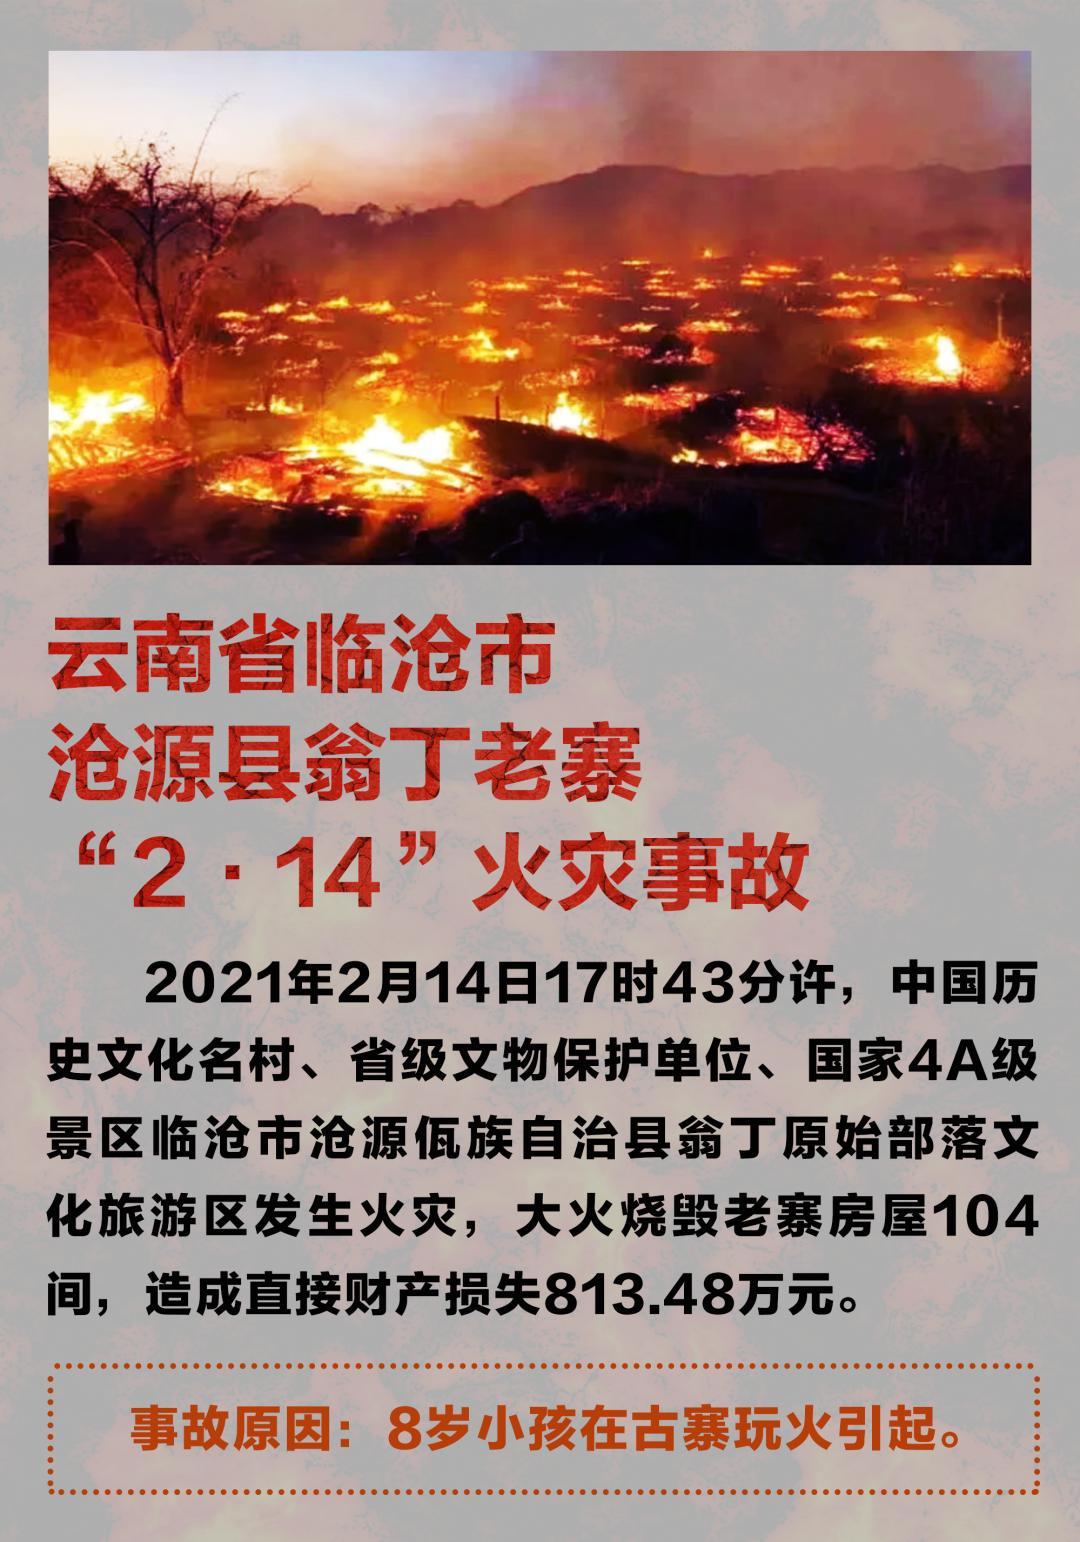 2021年全国10起典型火灾爆炸事故公布 云南翁丁古寨起火原因系8岁小孩玩火引起